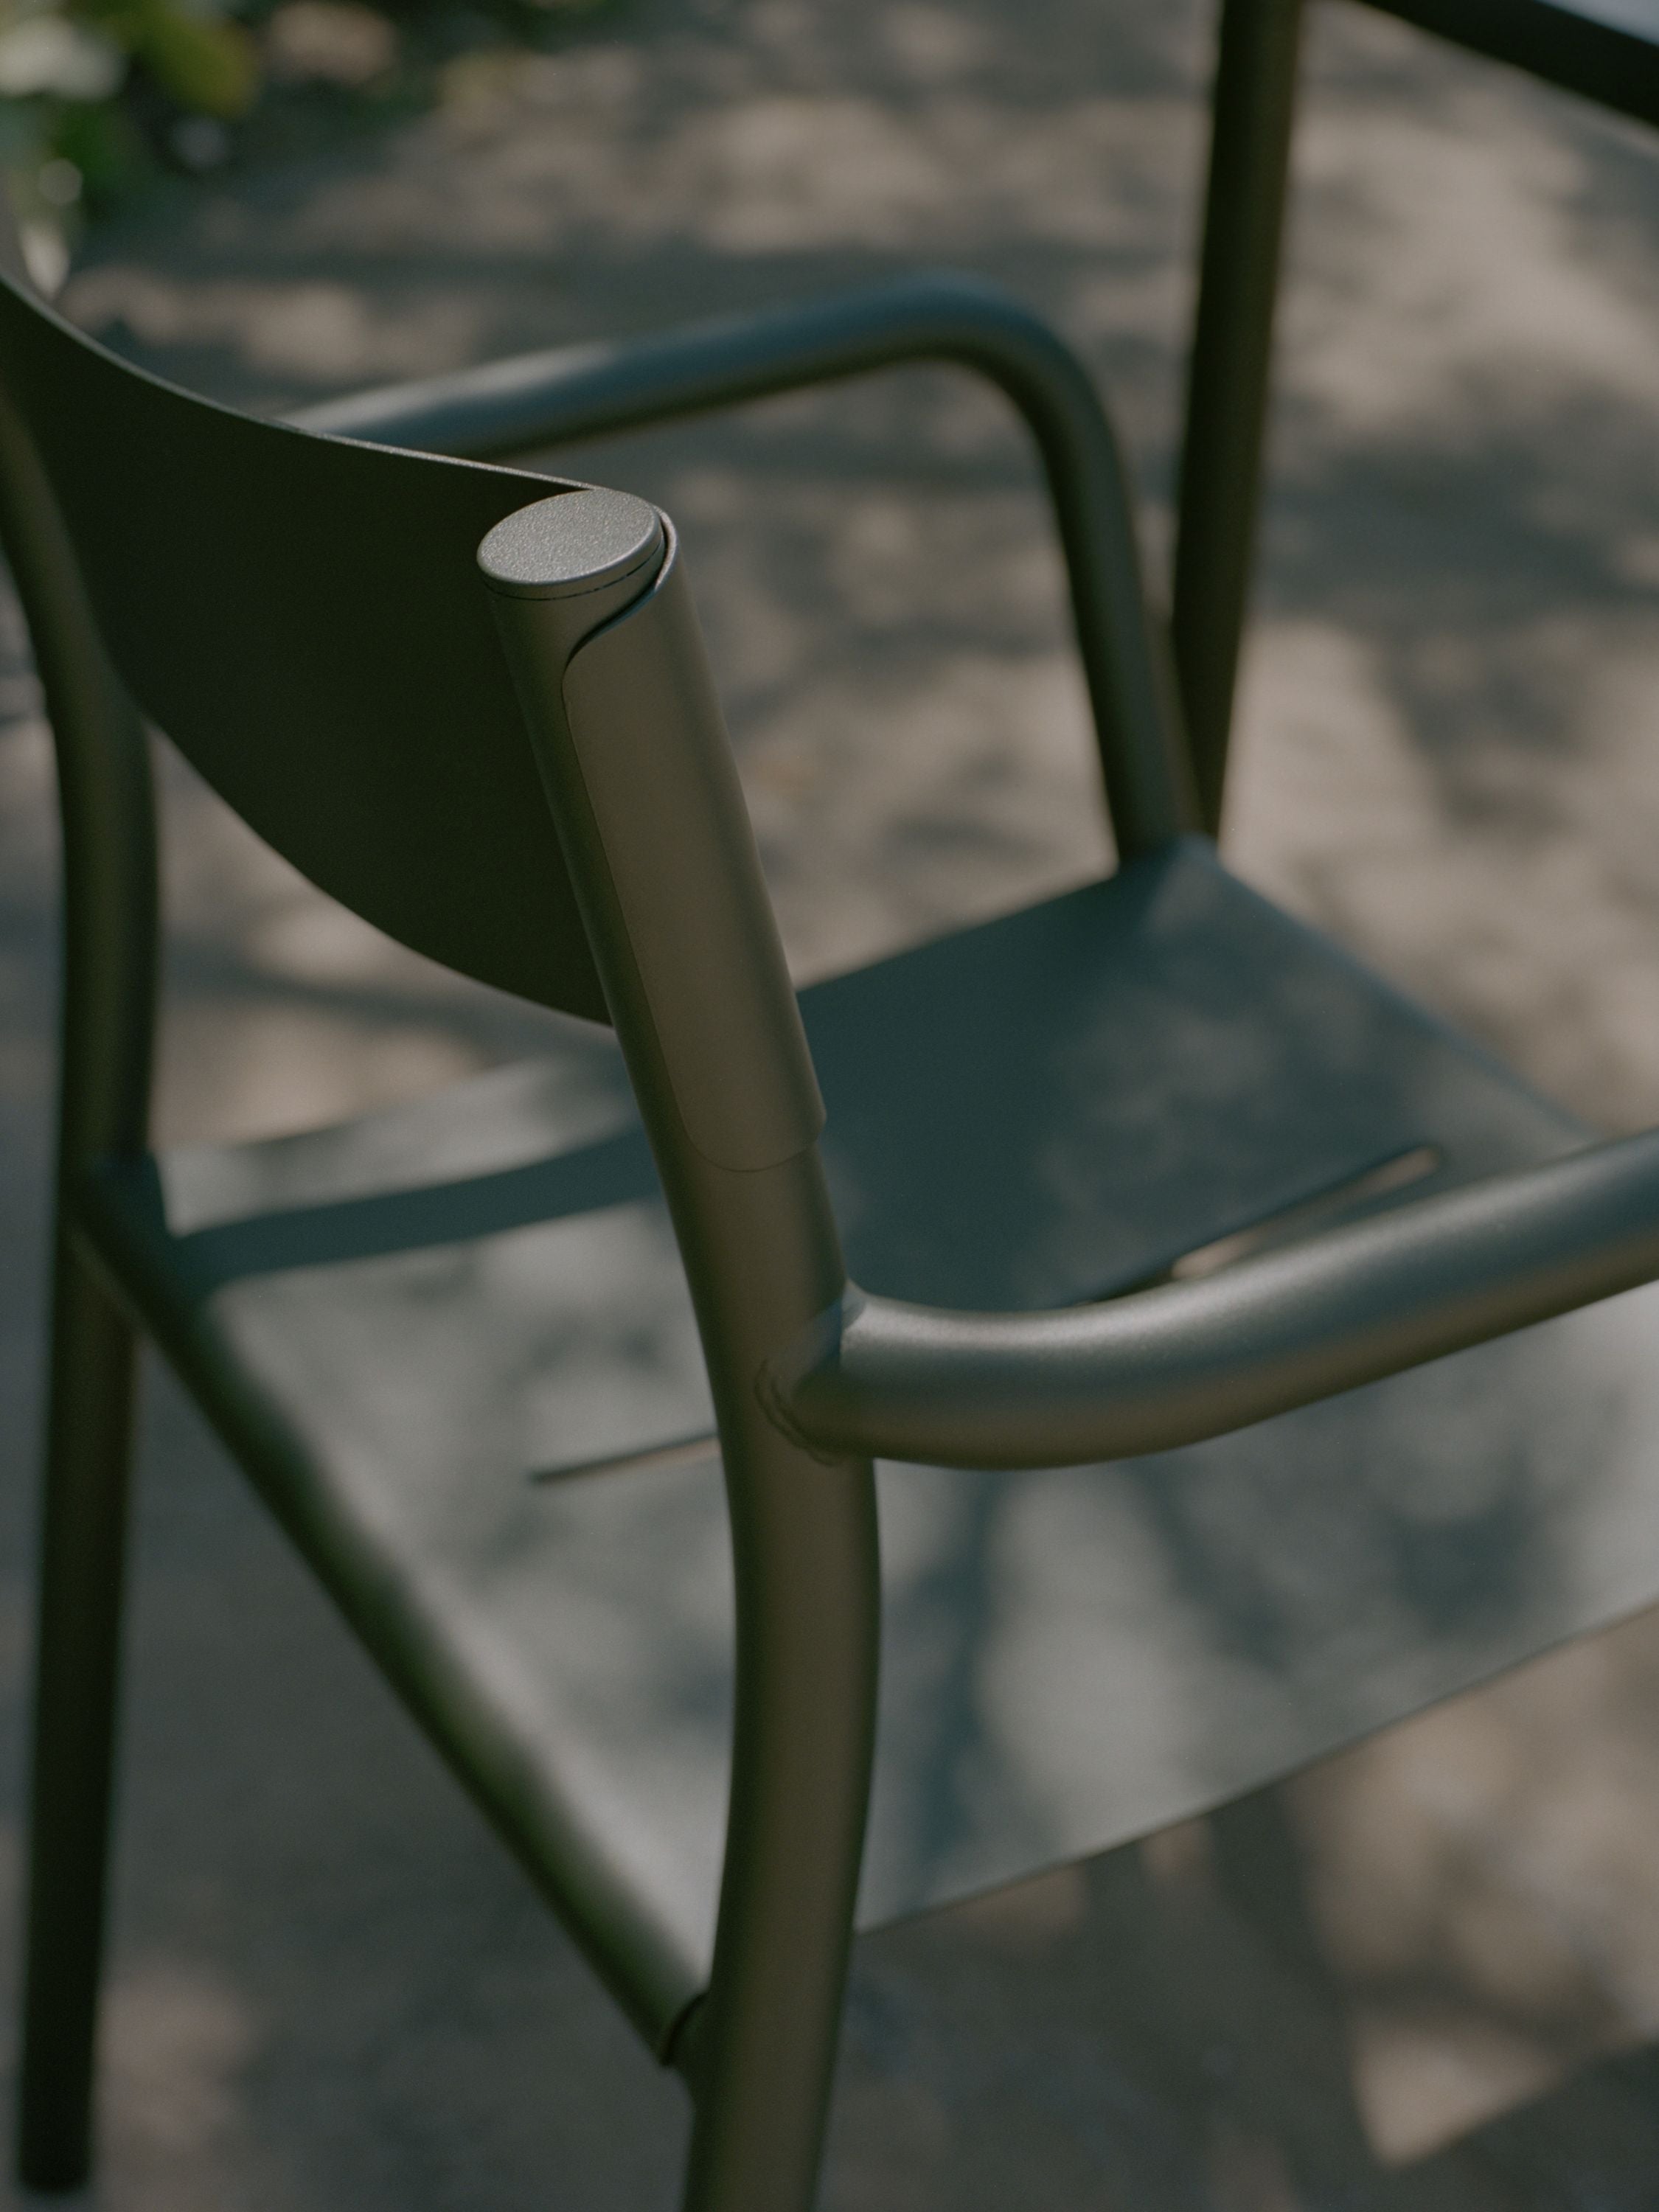 Les nouvelles œuvres peuvent fauteuil, vert foncé